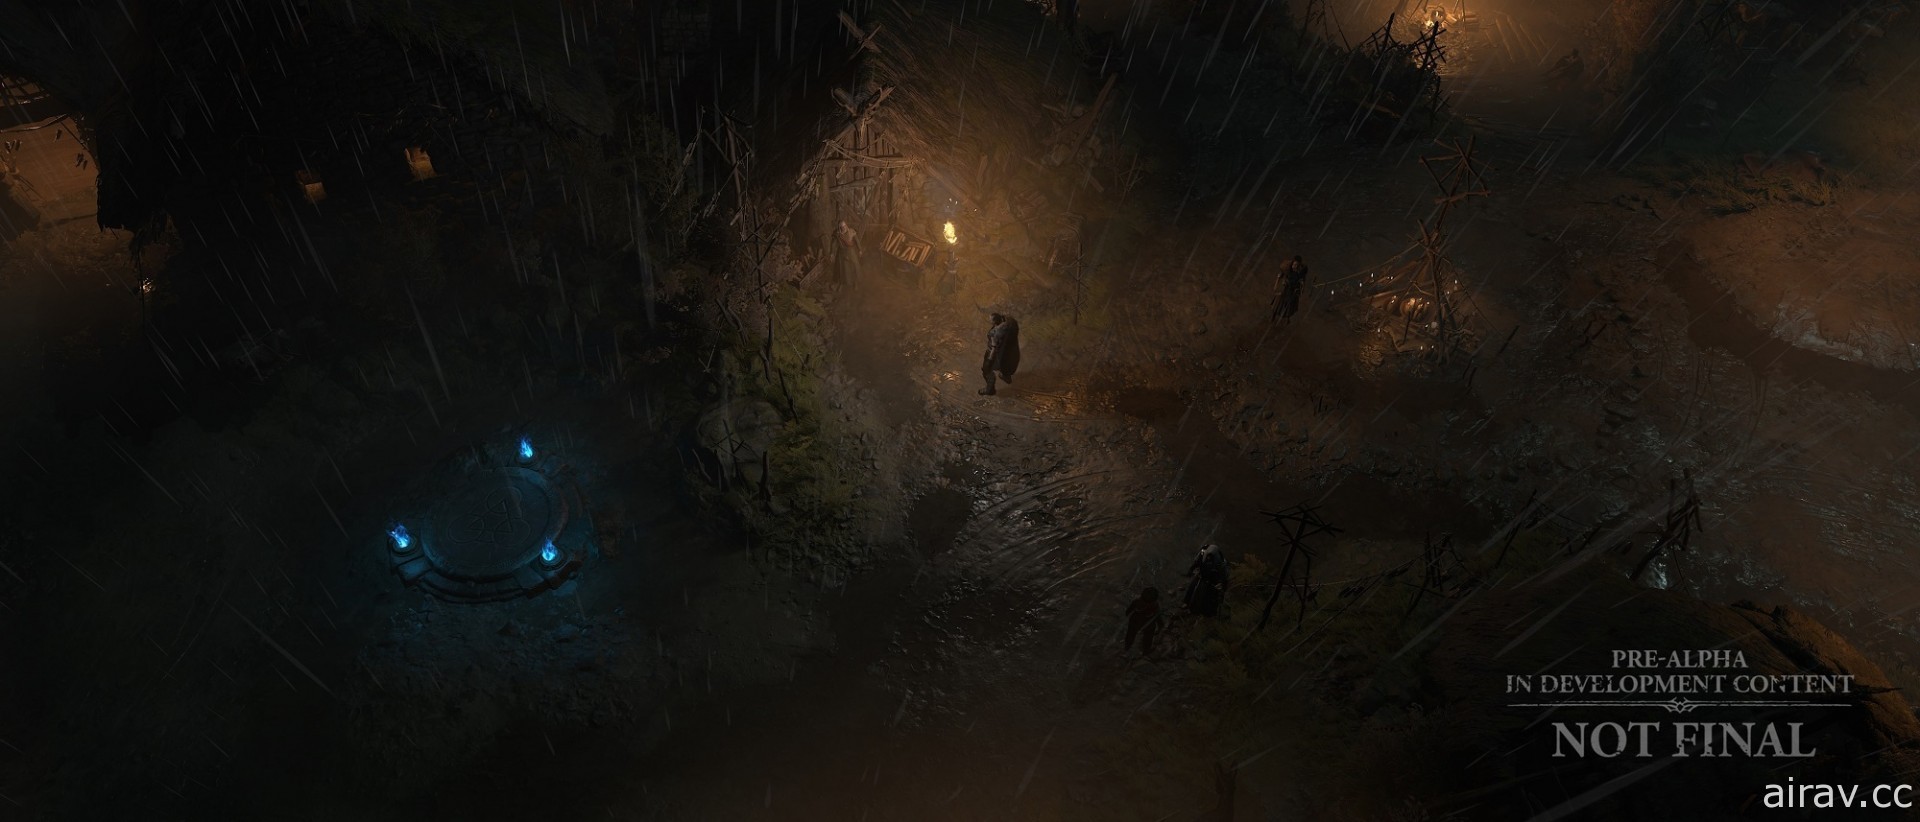 《暗黑破坏神 4》将有超过 150 个随机地下城供探索 新公开环境美术影片